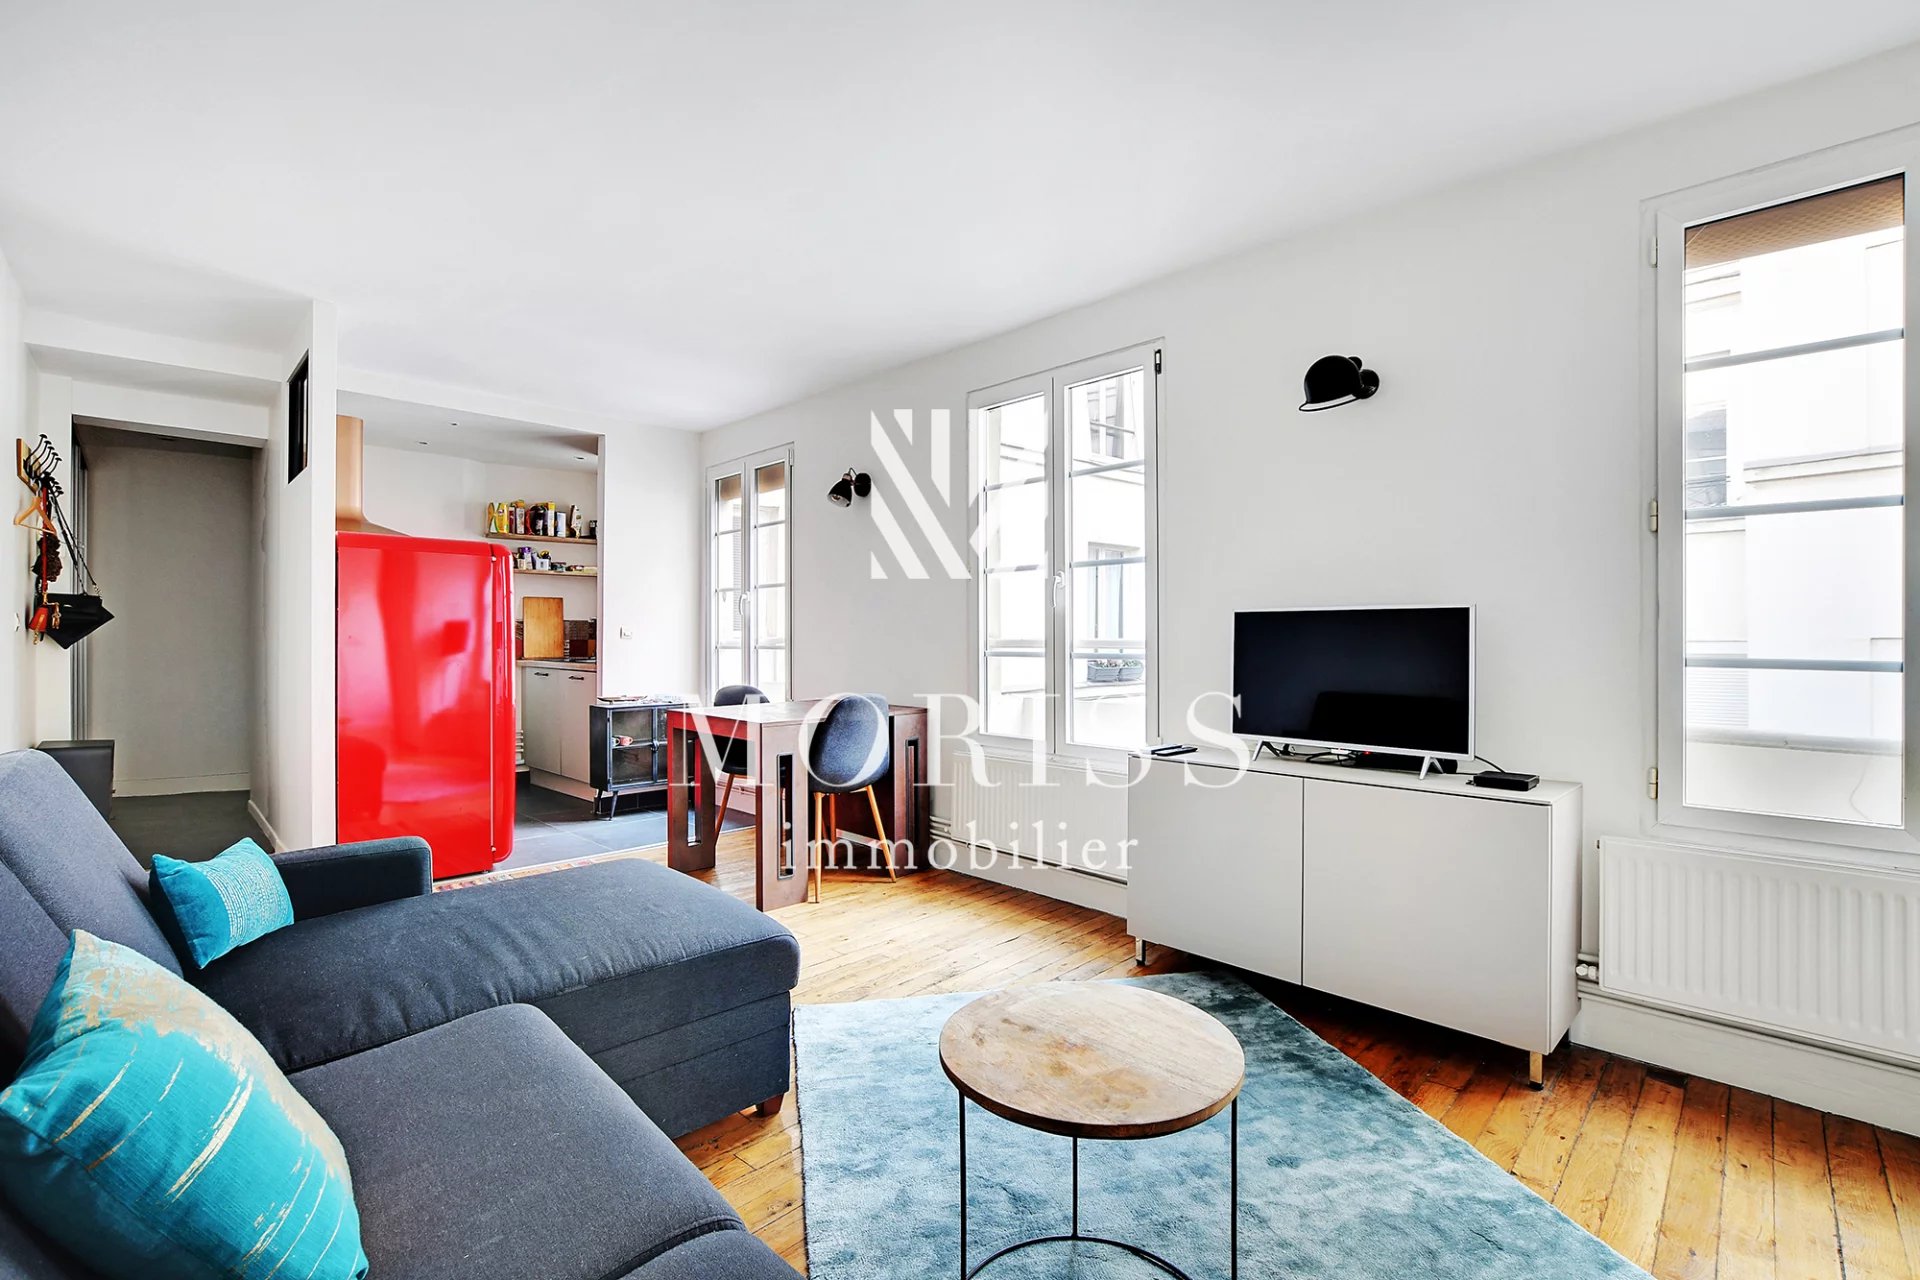 Appartement – 2 pièces – 39 M2 – Arts et Métiers - 75003 Paris - Image 1